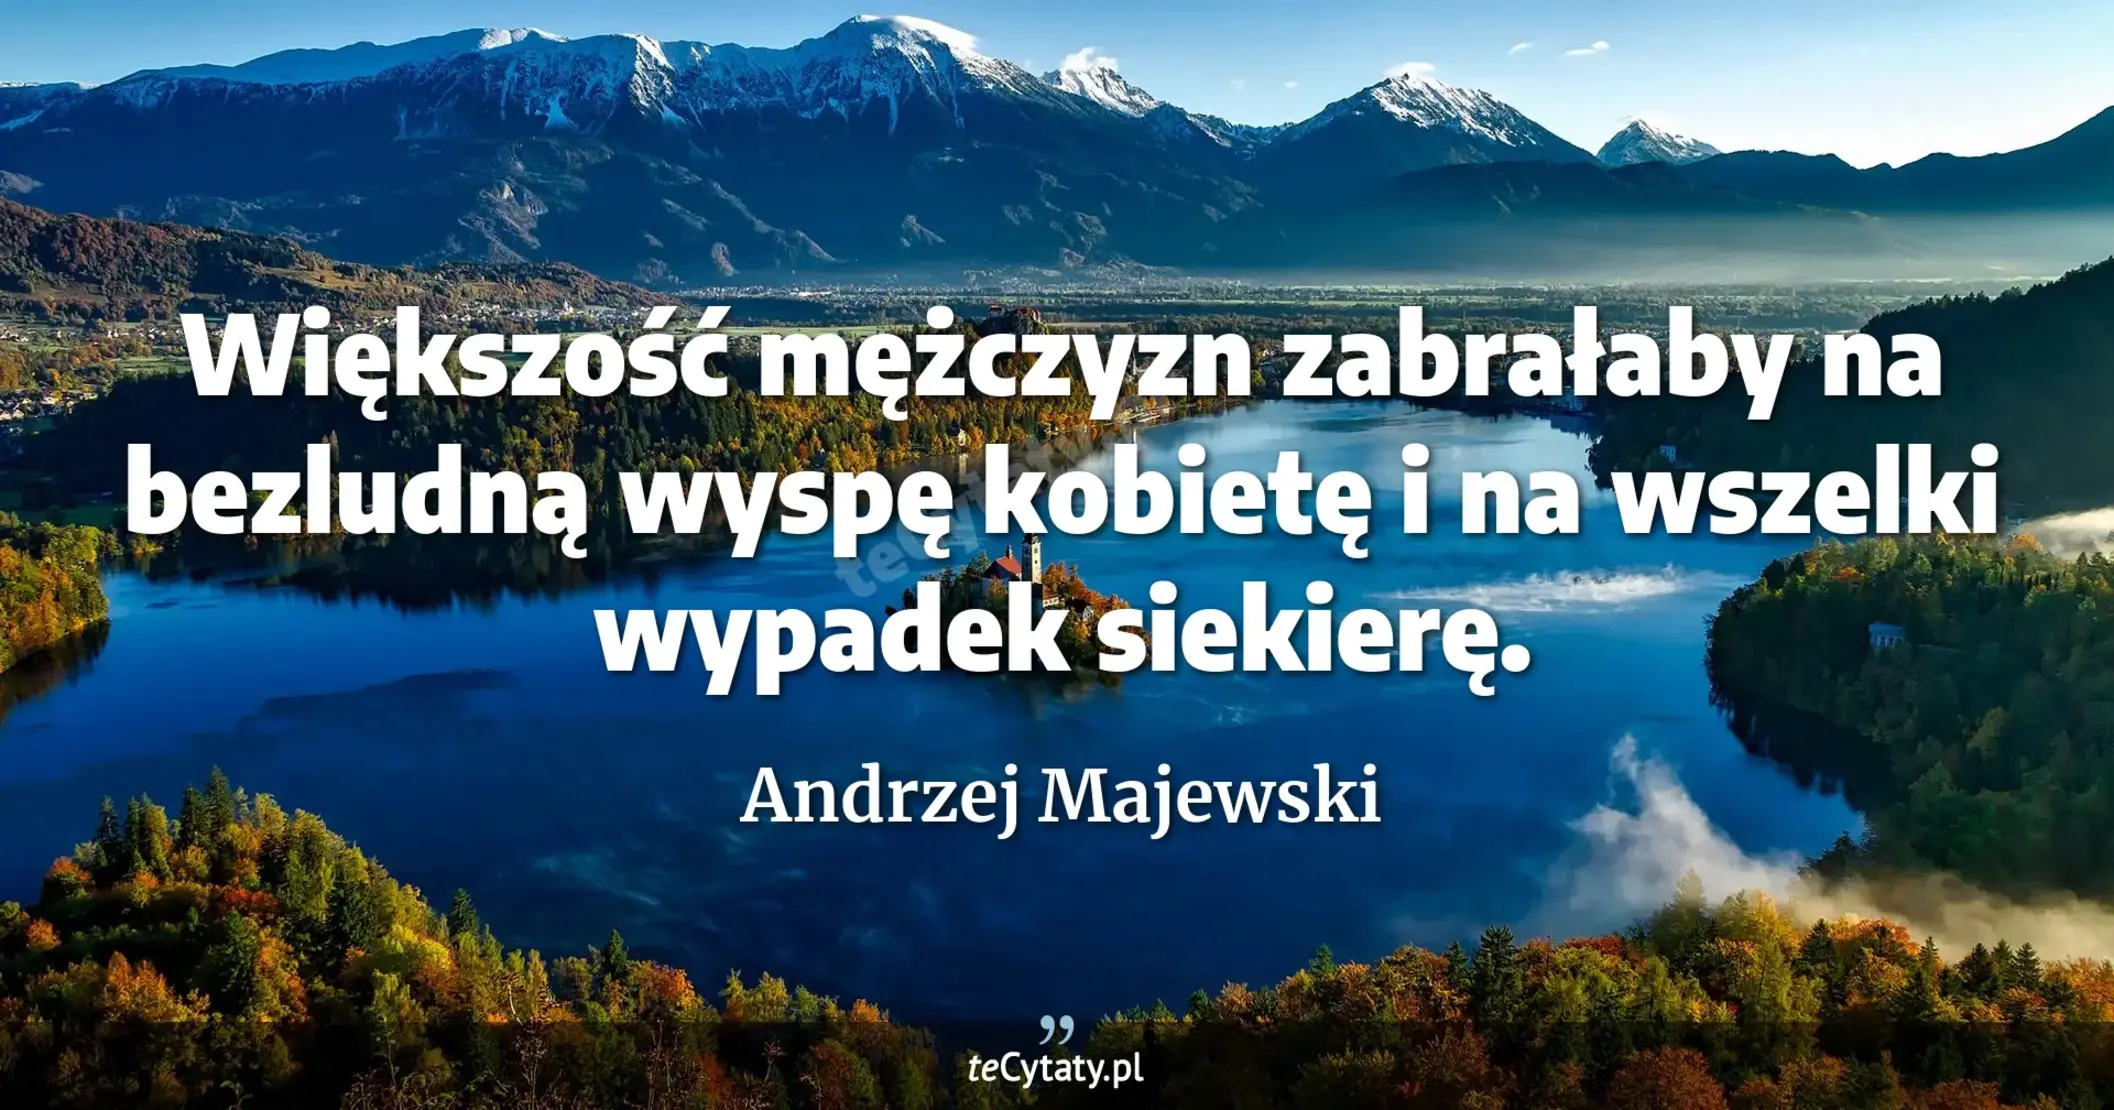 Większość mężczyzn zabrałaby na bezludną wyspę kobietę i na wszelki wypadek siekierę. - Andrzej Majewski